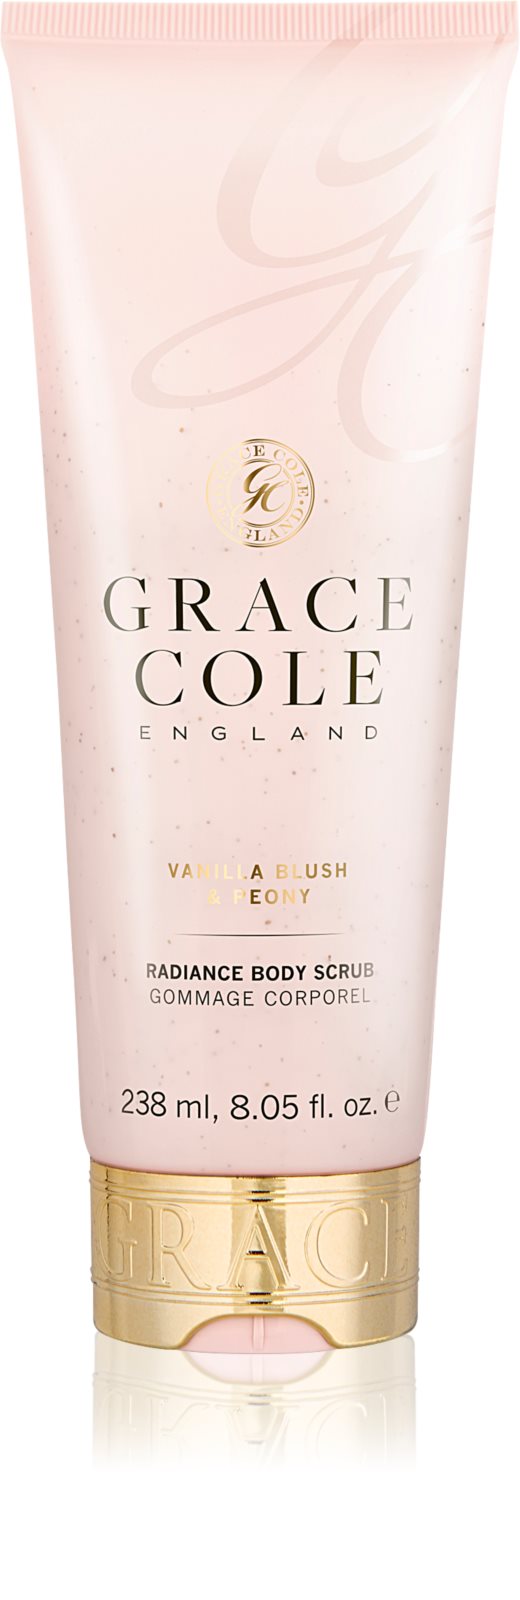 GRACE COLE: Vanilla Blush & Peony